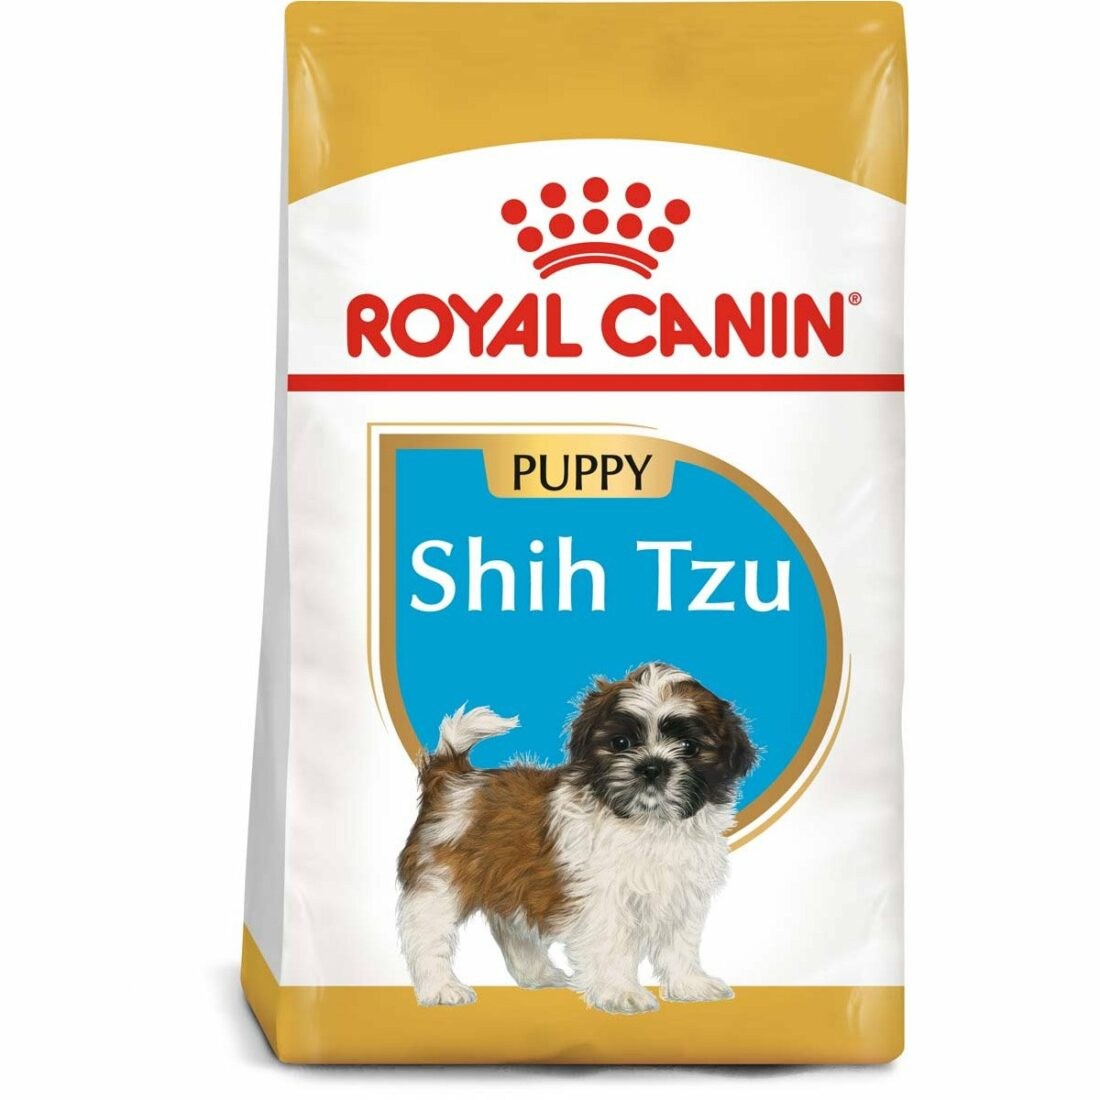 Royal Canin Shih Tzu 28